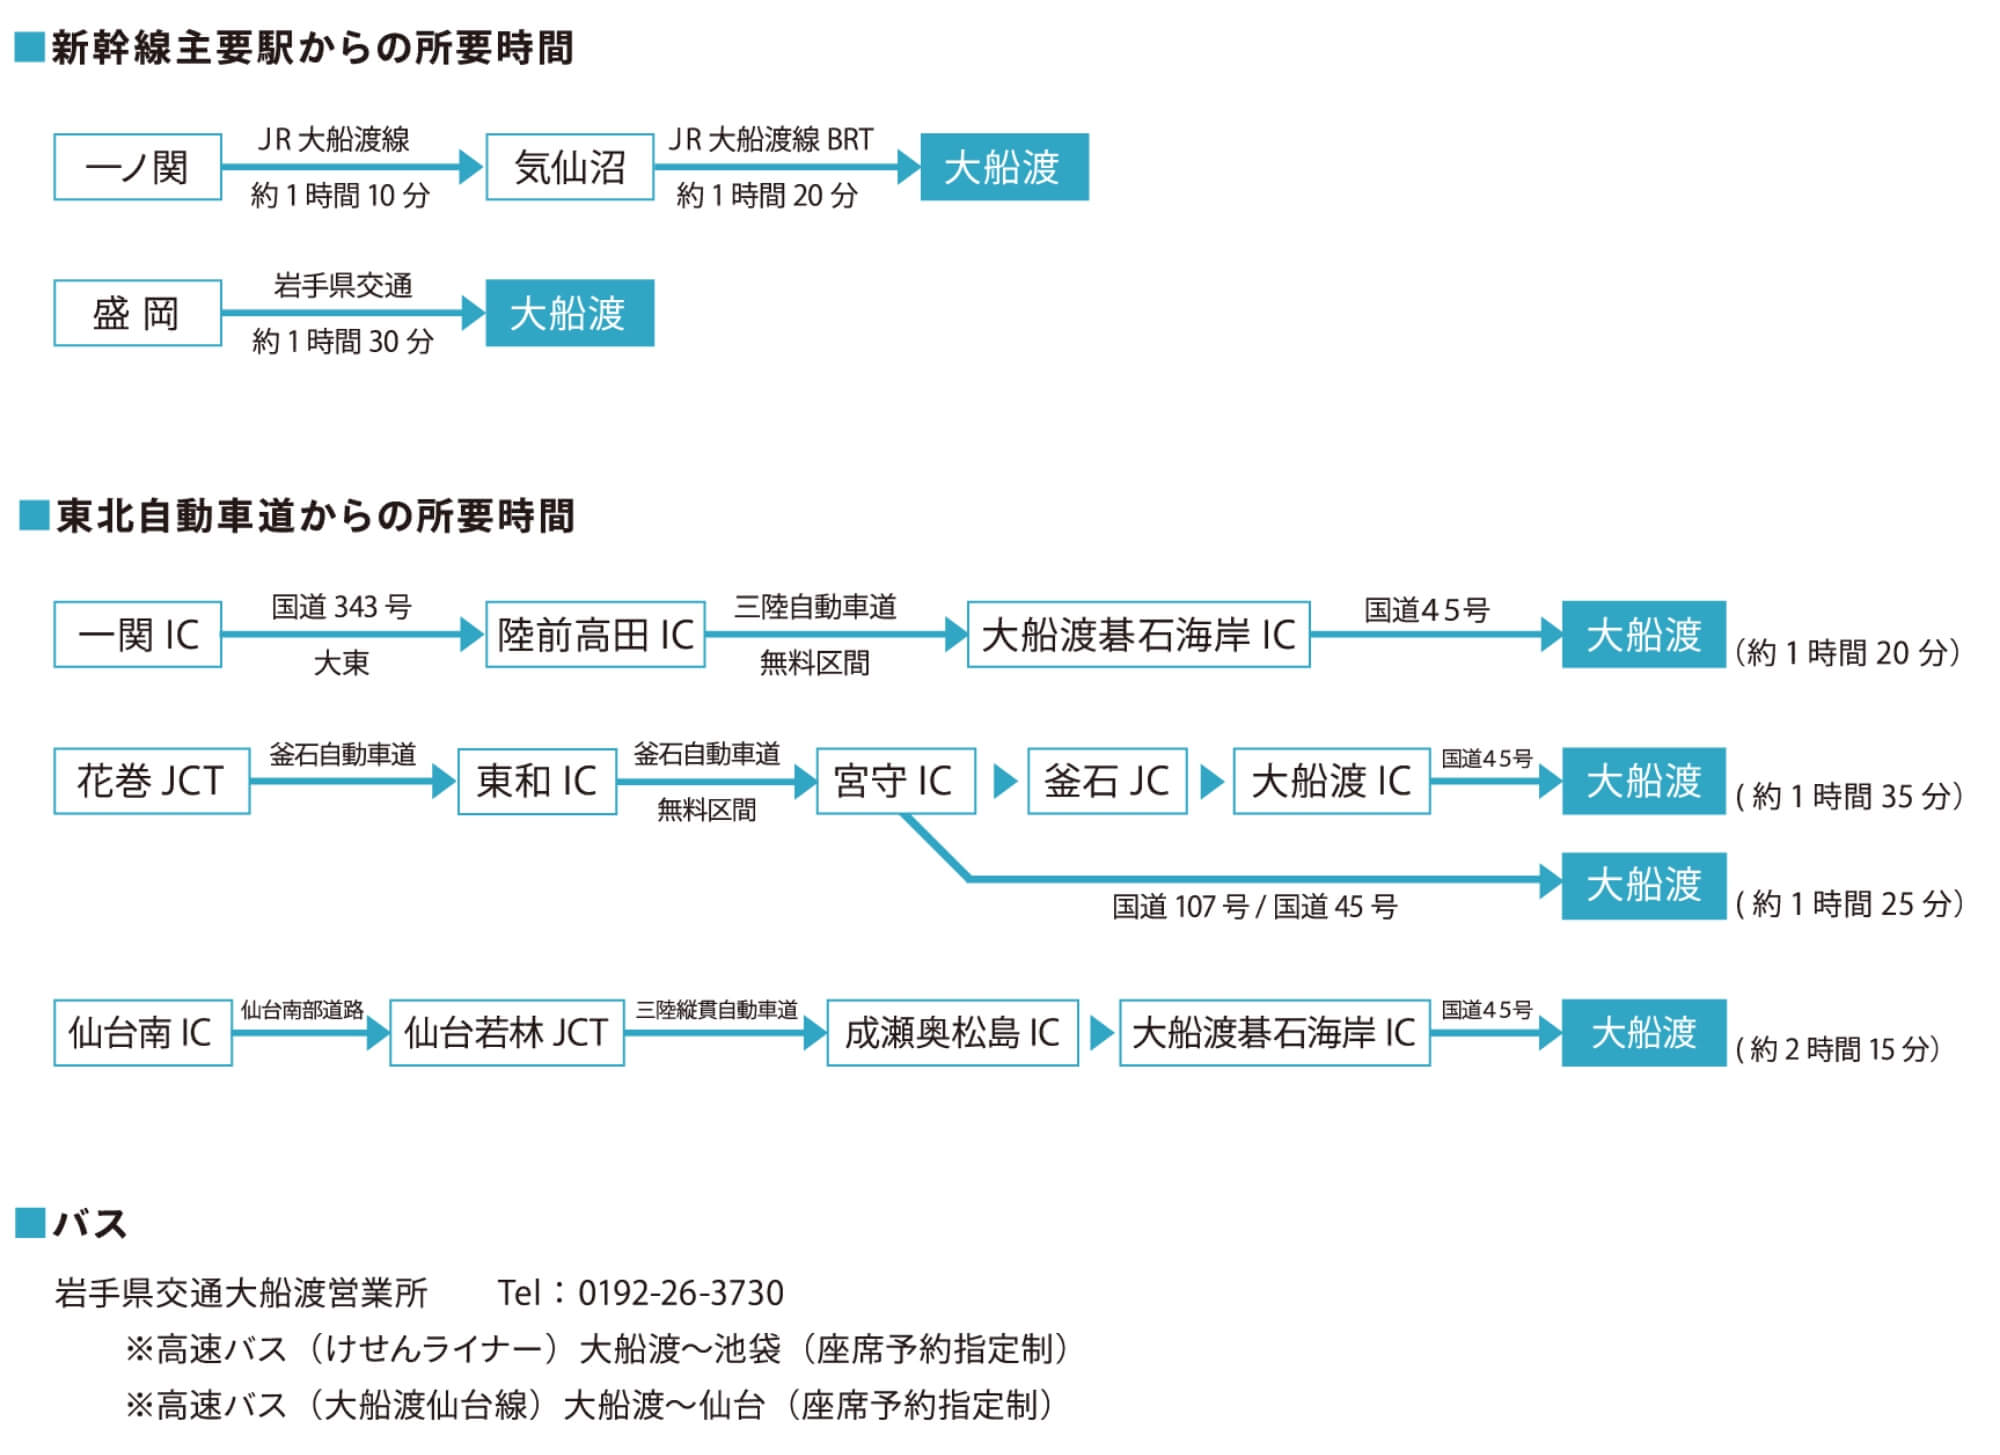 新幹線主要駅からの所要時間、東北自動車道からの所要時間、バス会社情報を記載